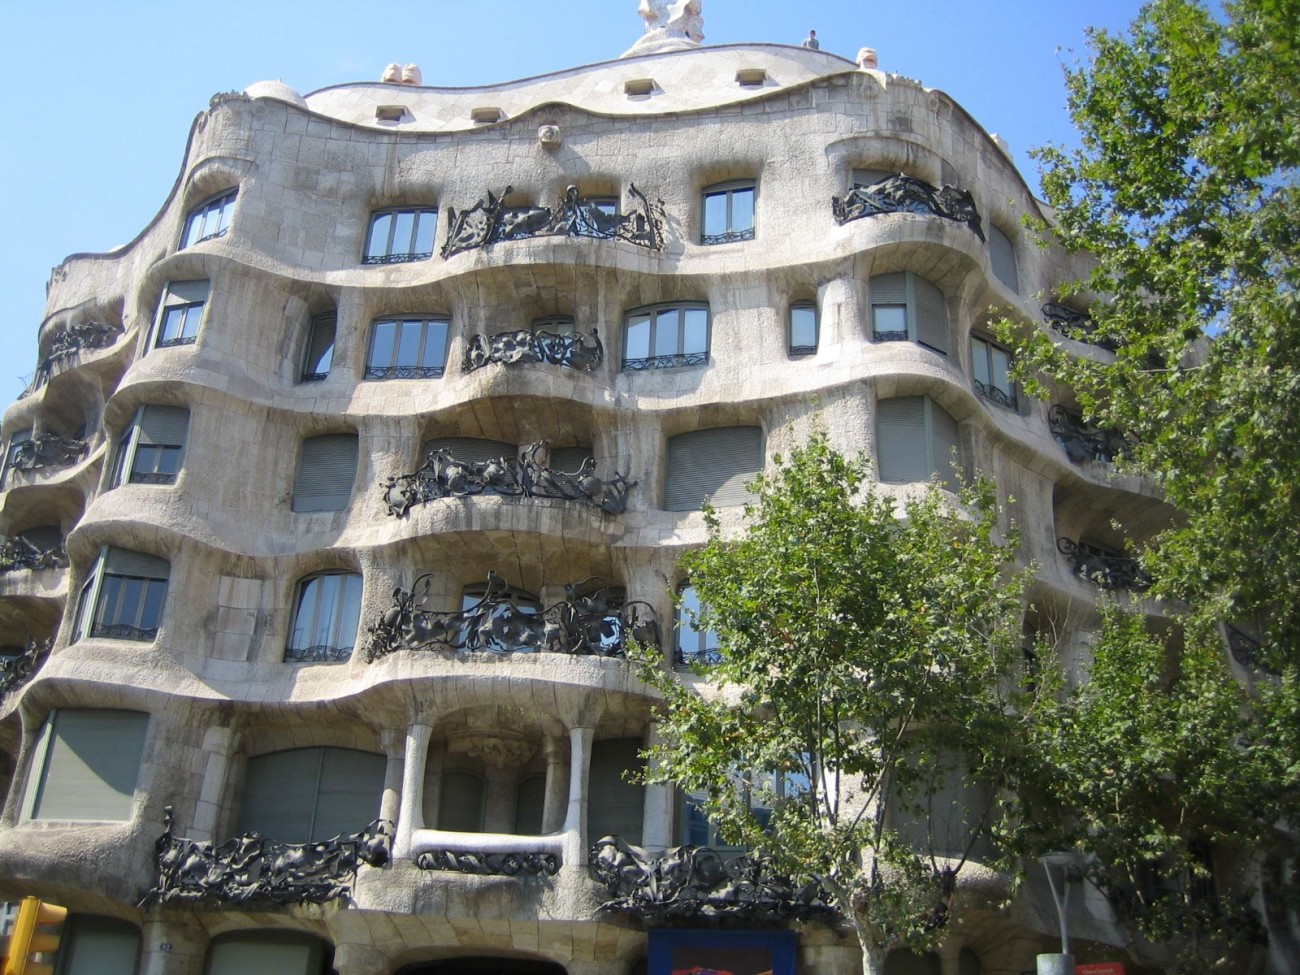 Bekannt aus der Antonioni-DVD-Box: Die "Casa Milà" von Antoni Gaudí